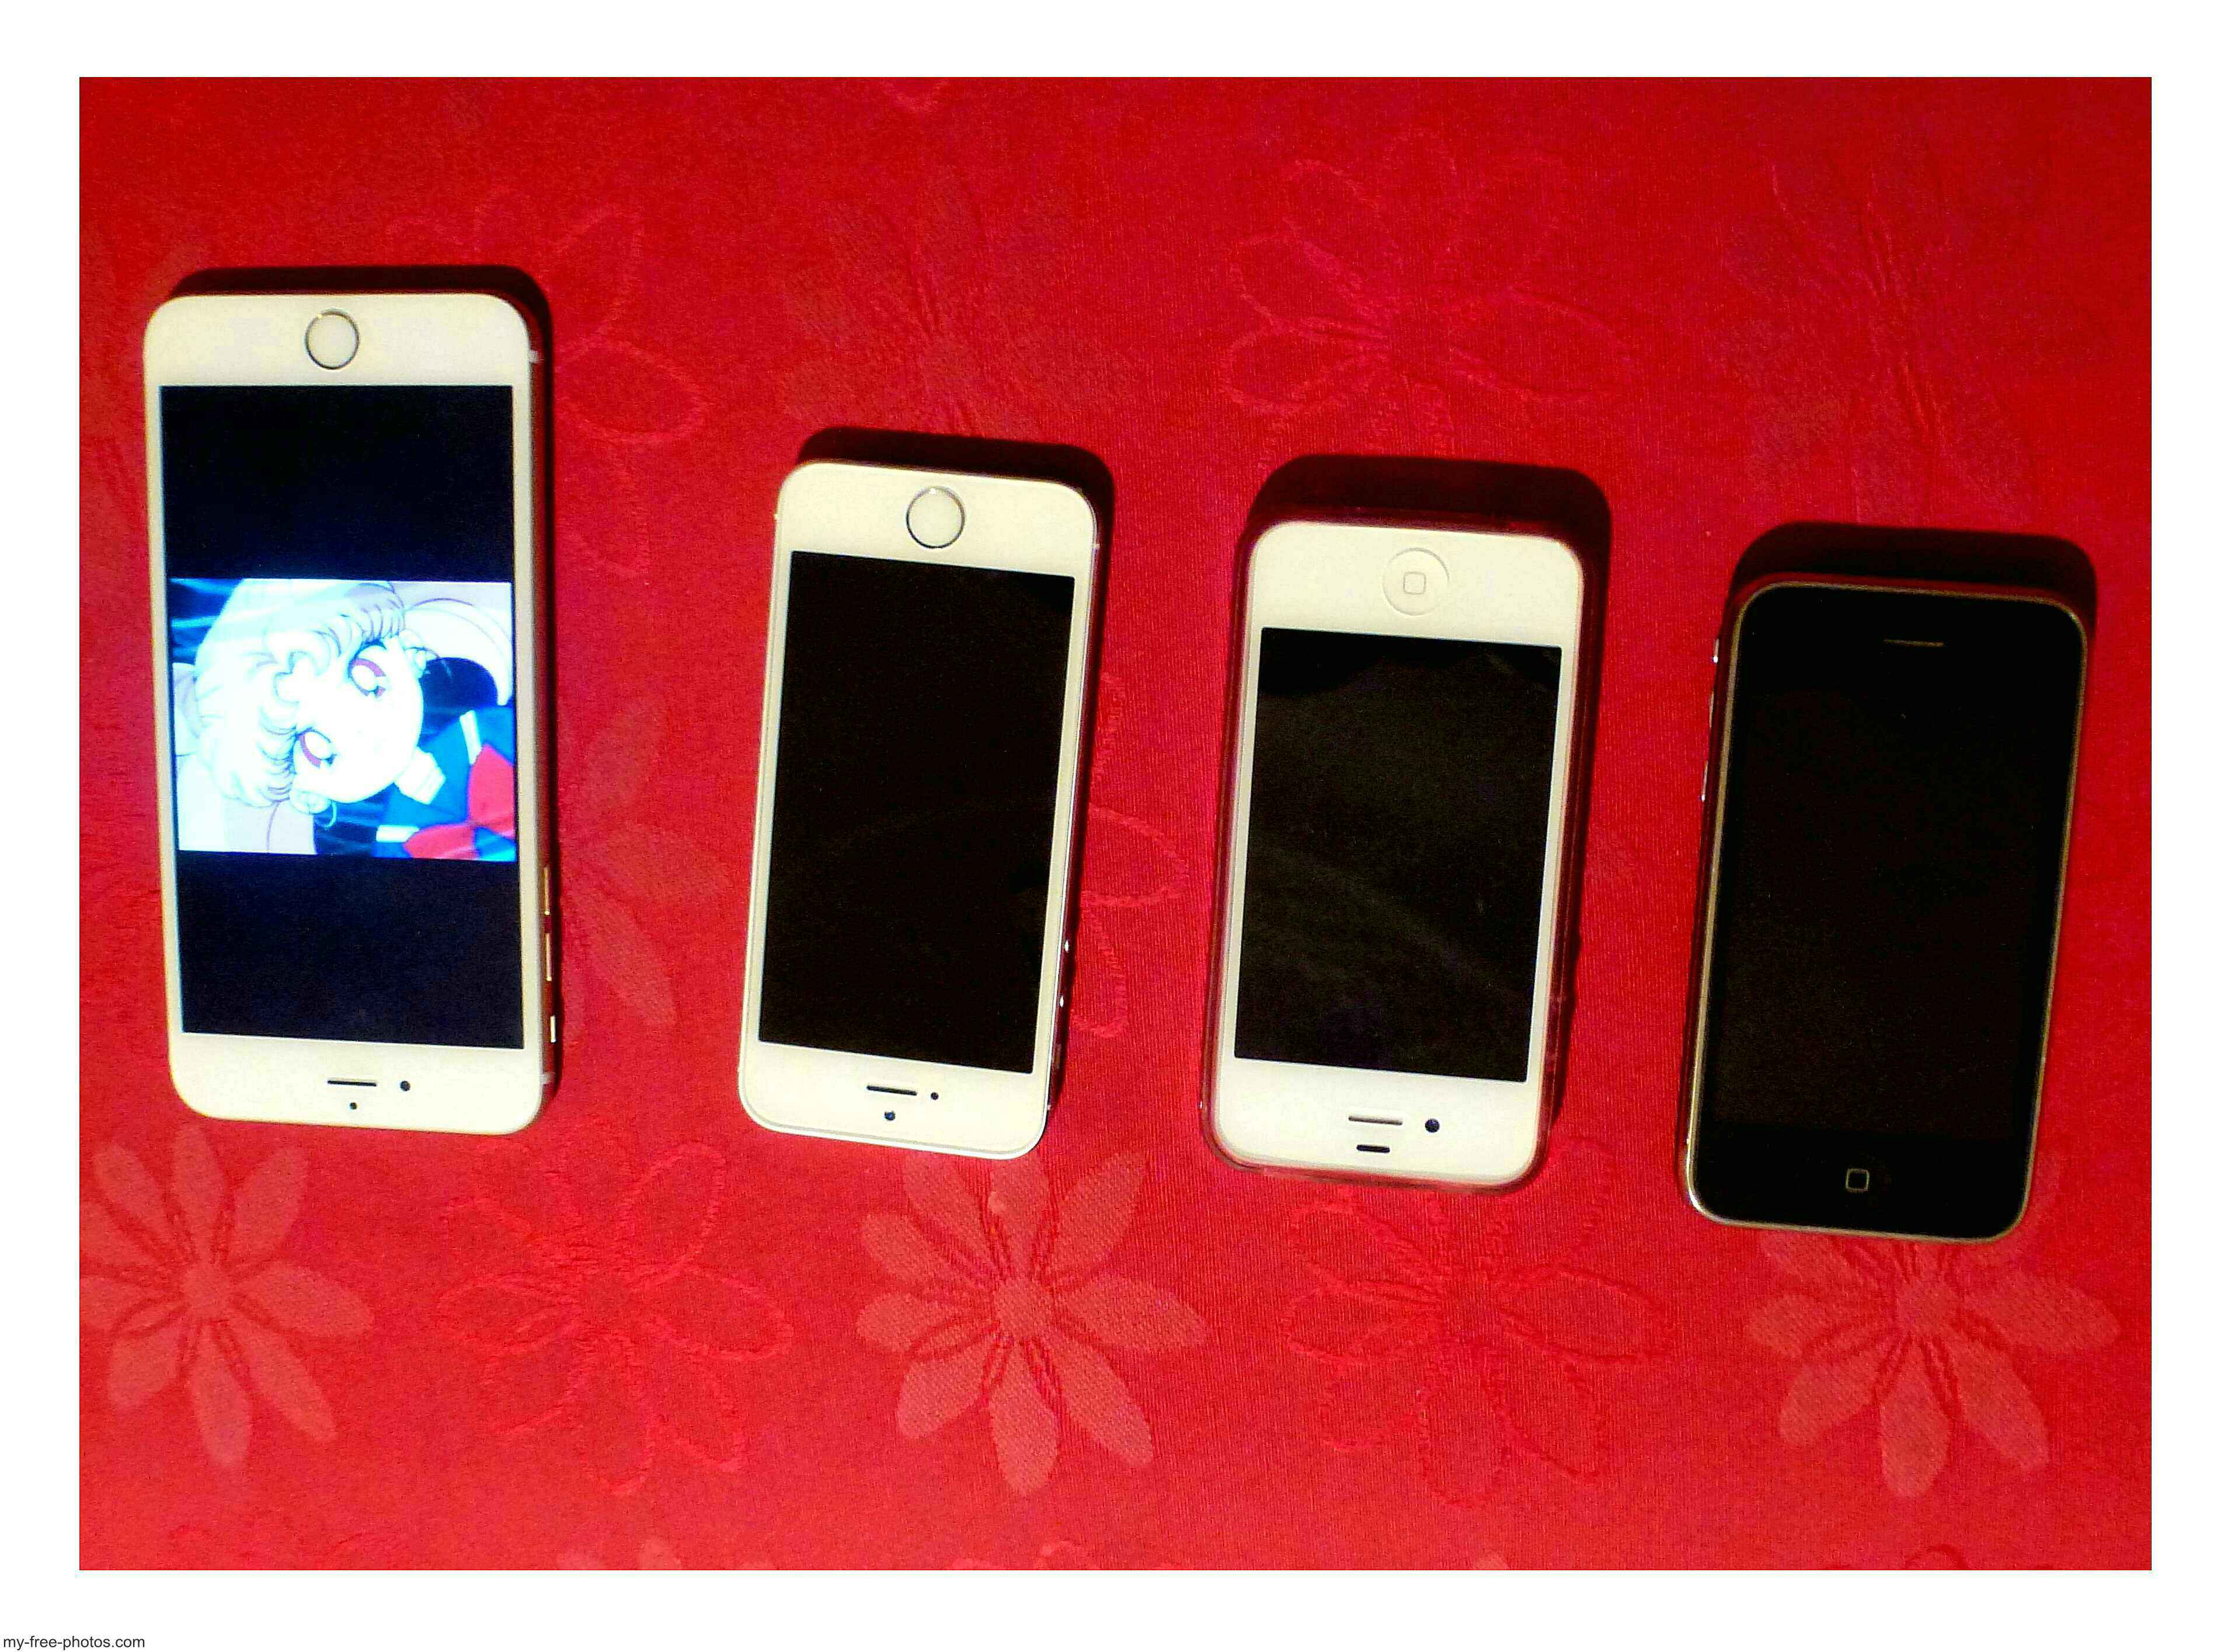 Apple Iphones 6 thru 3